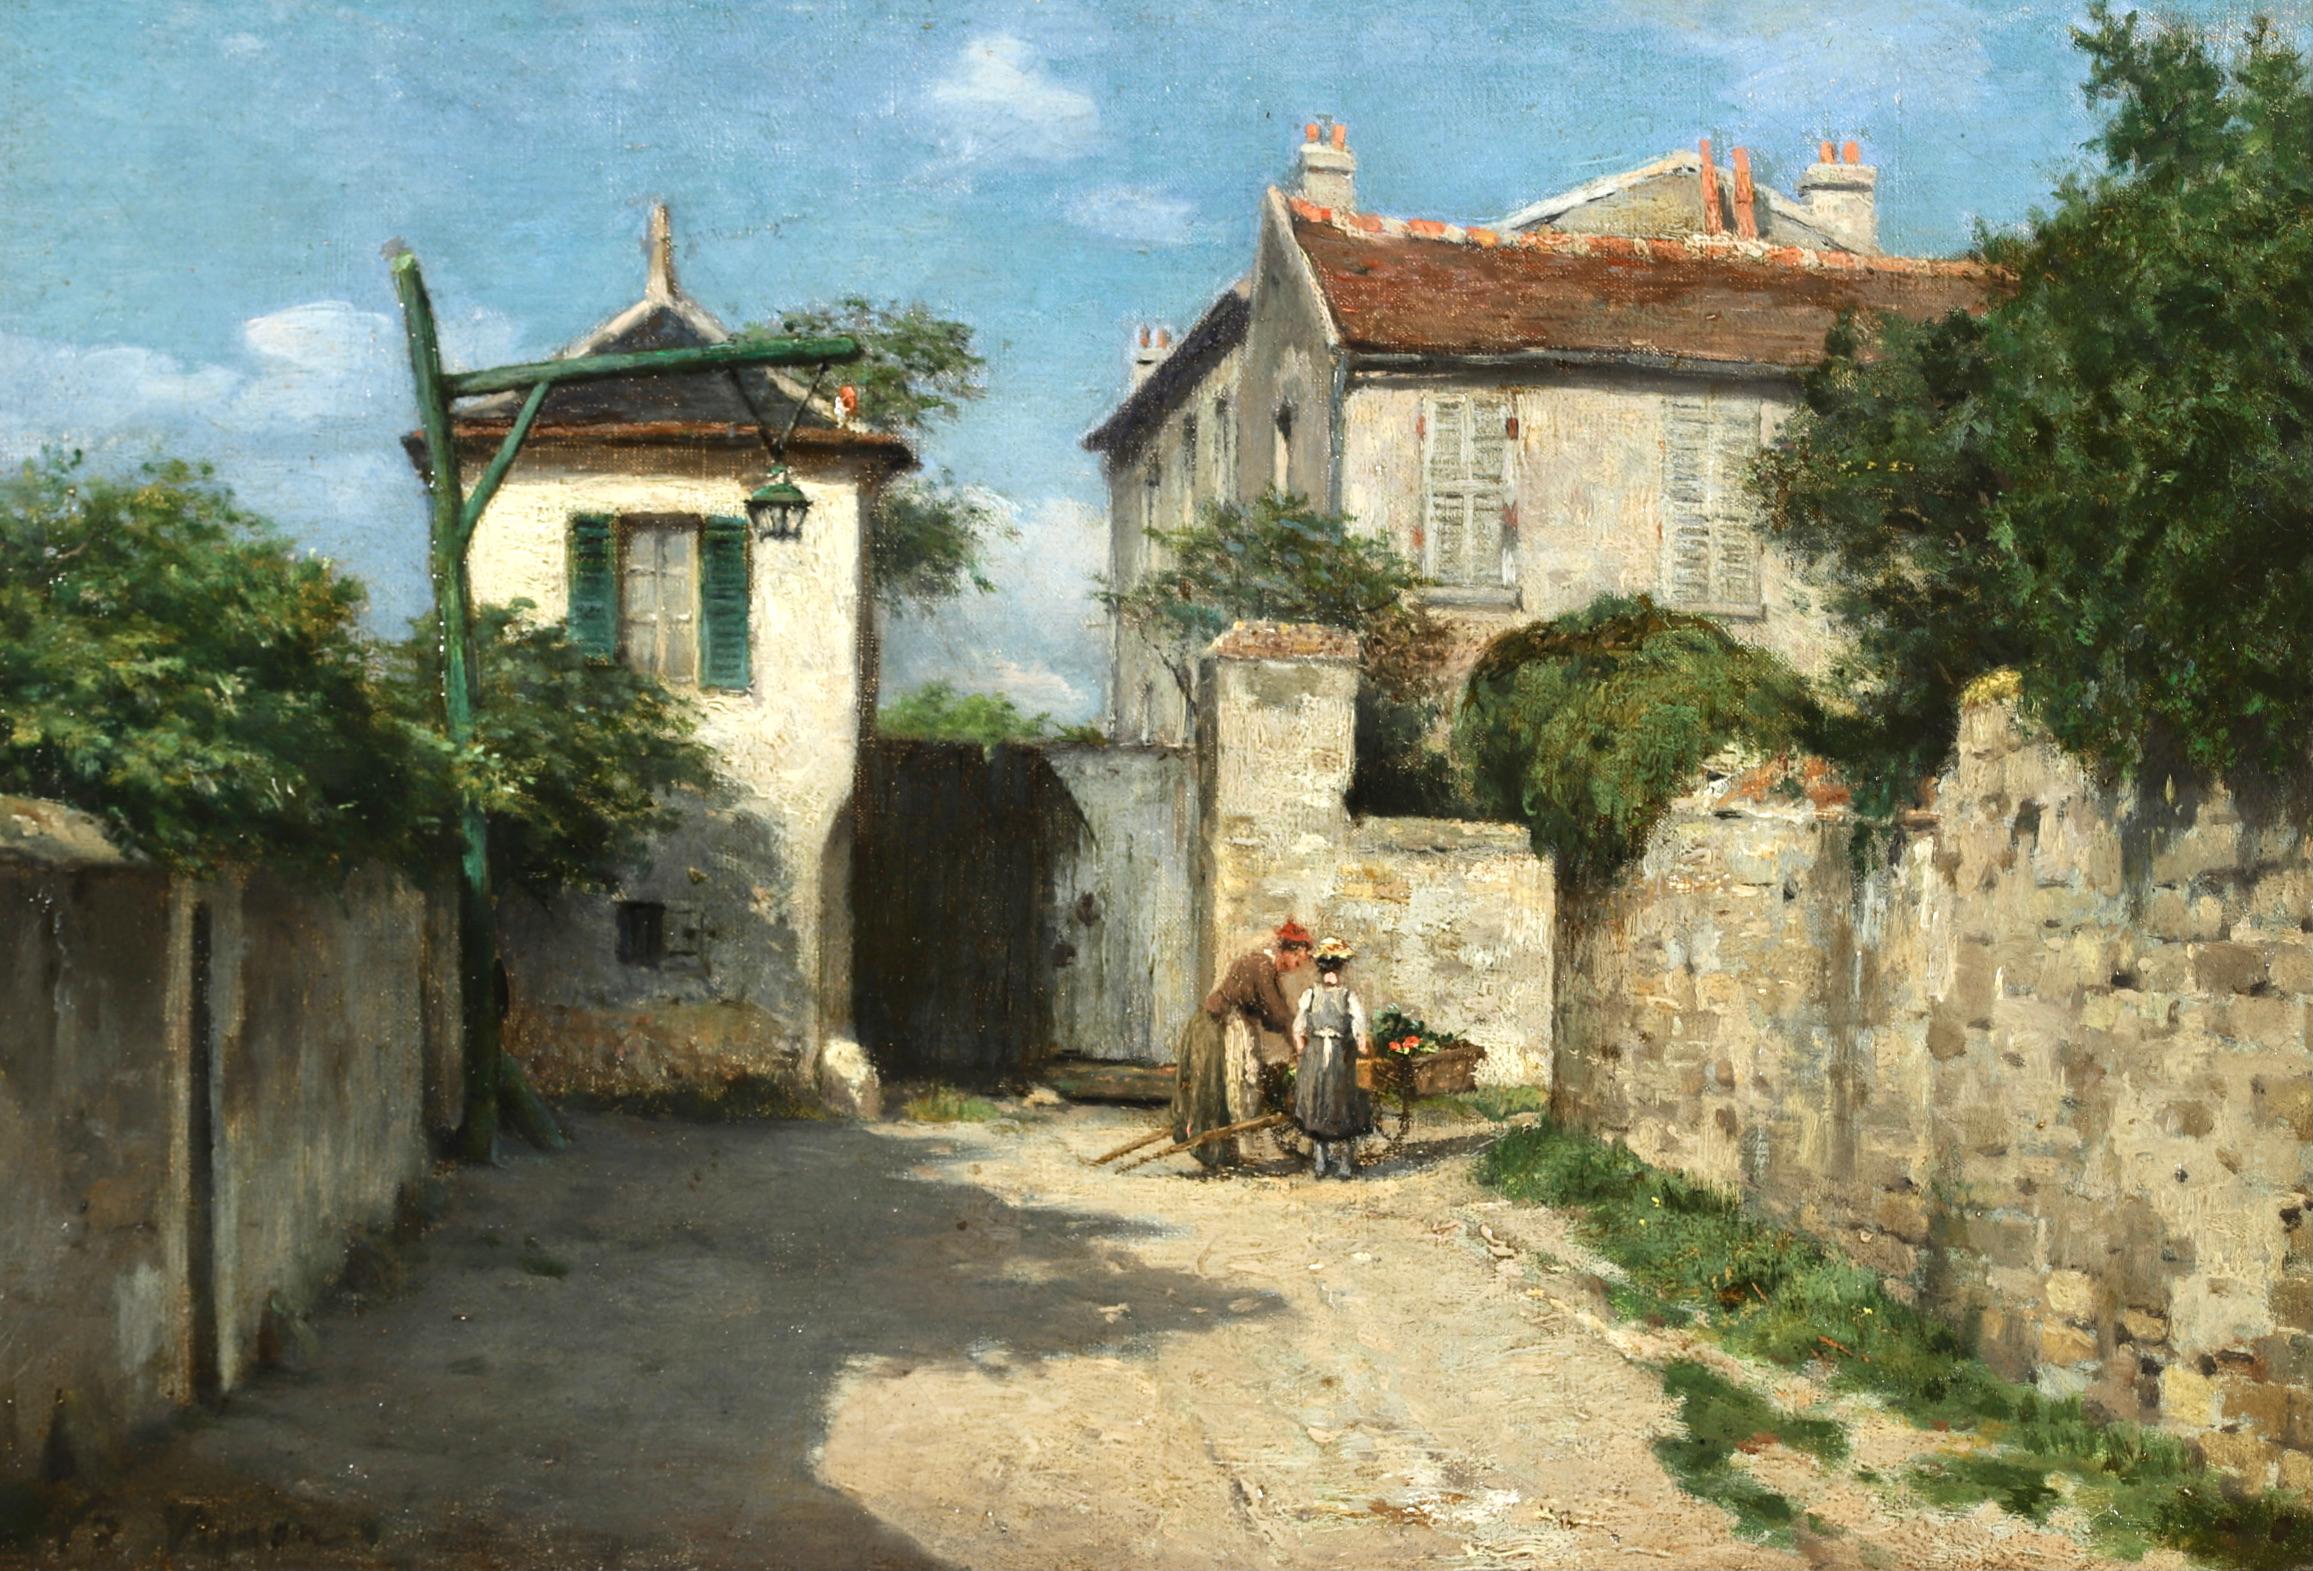 Le Village - Auvers-sur-Oise - Peinture de paysage impressionniste - Victor Vignon - Painting de Victor Alfred Paul Vignon